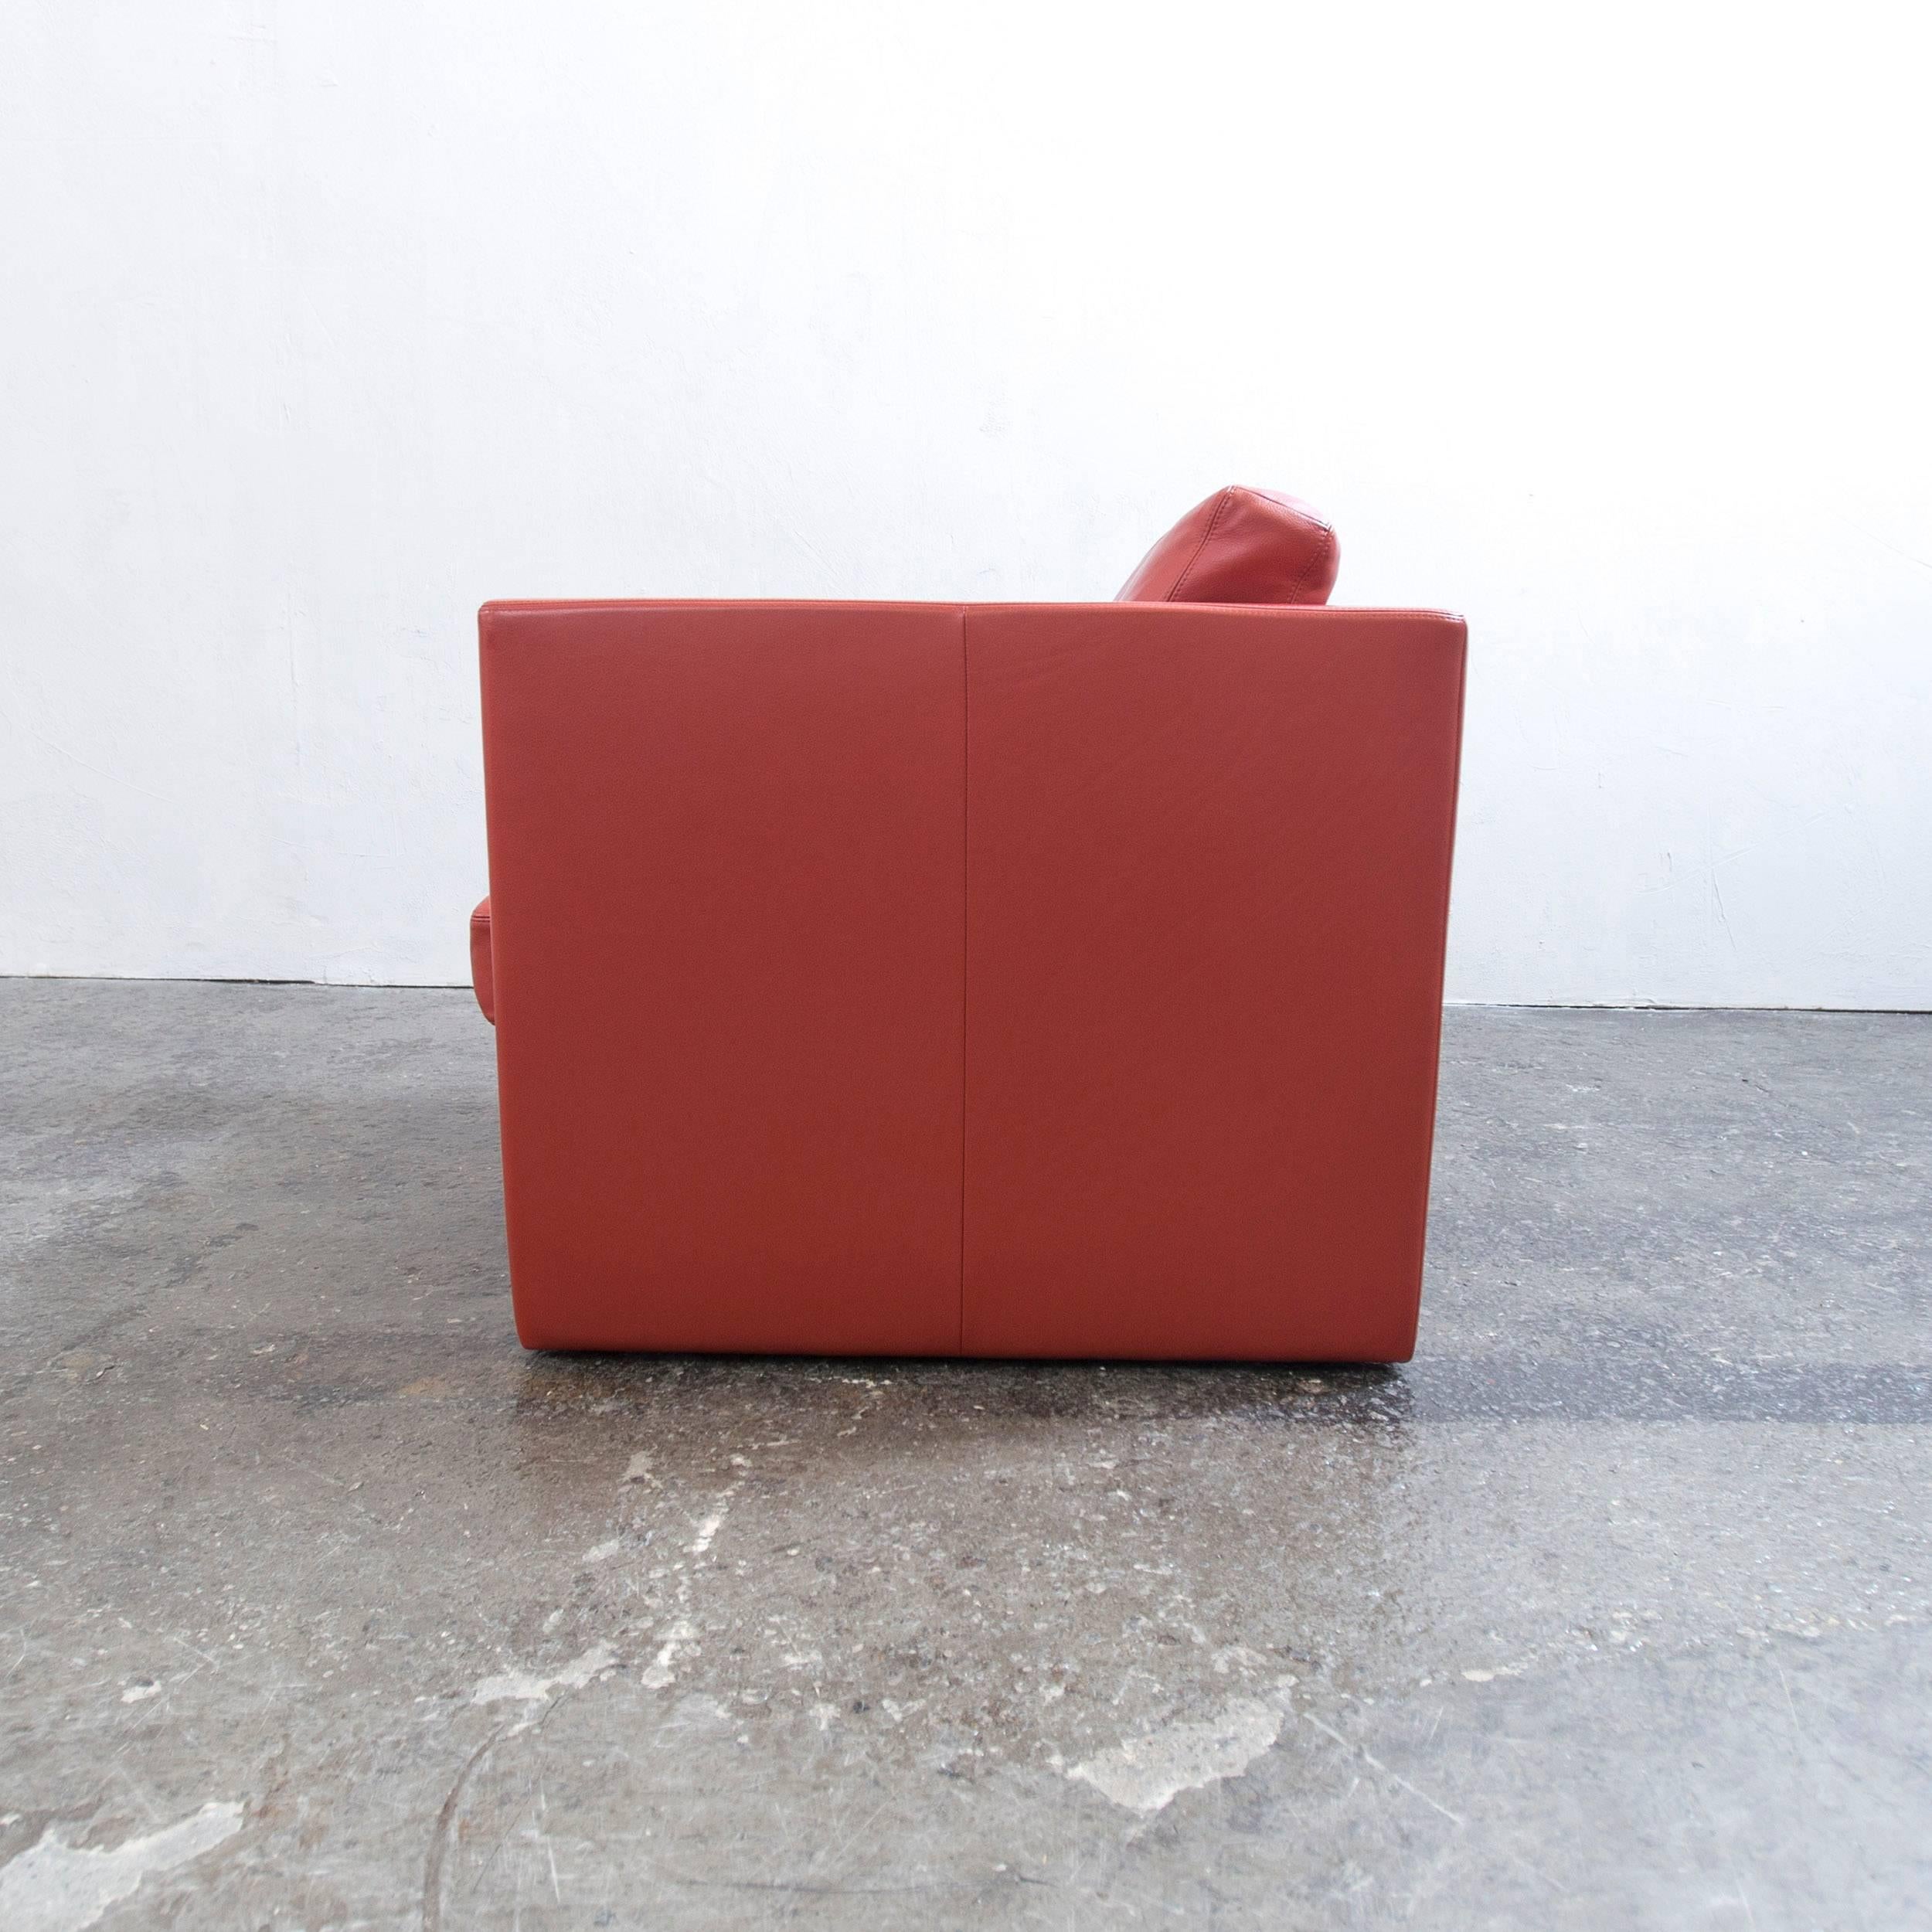 Erpo Designer Armchair Orange Red One Seat Couch, Modern 2